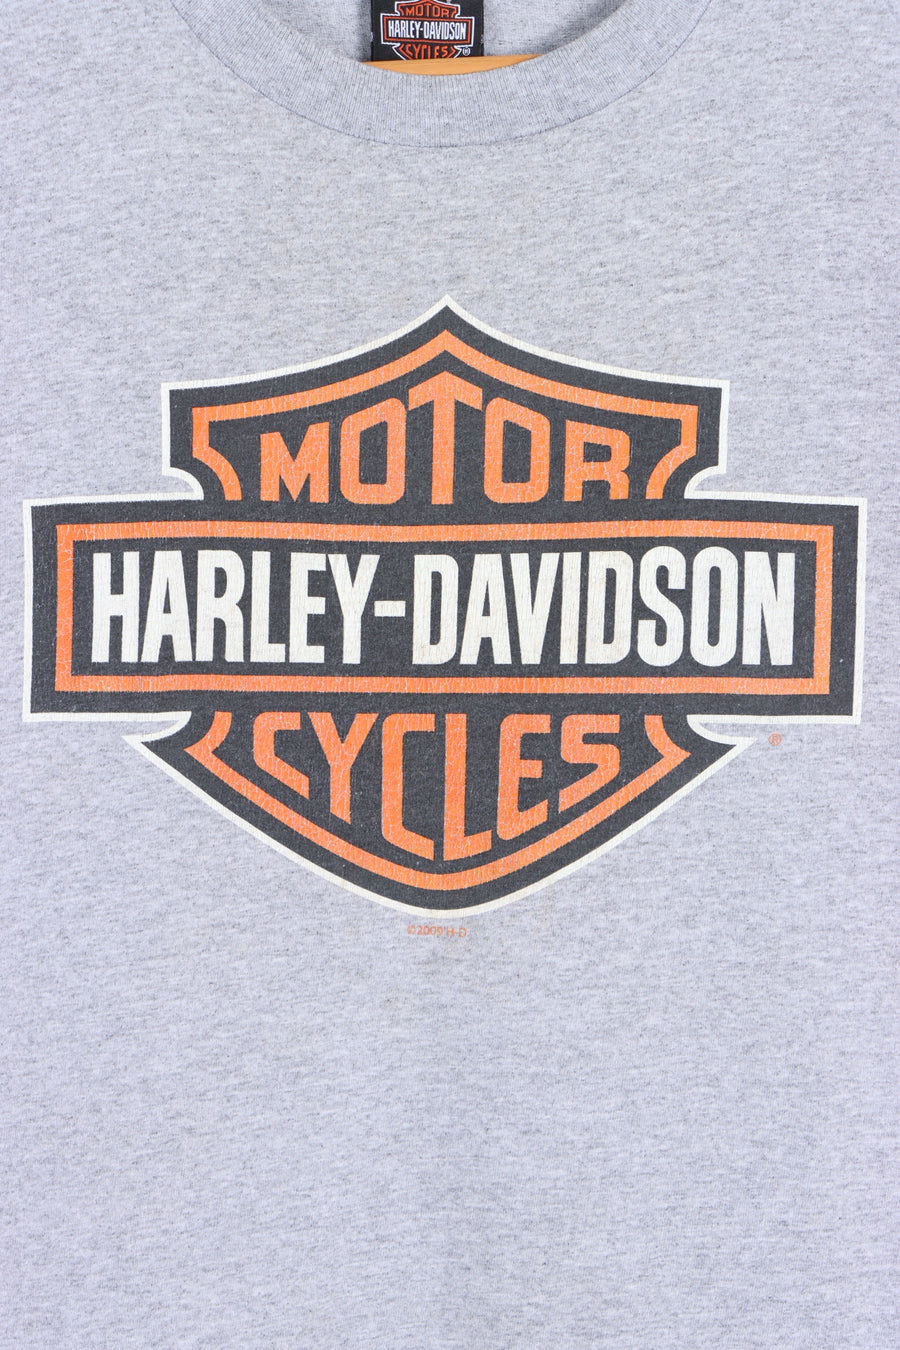 HARLEY DAVIDSON Daegu Korea Front Back Temple T-Shirt (M) - Vintage Sole Melbourne